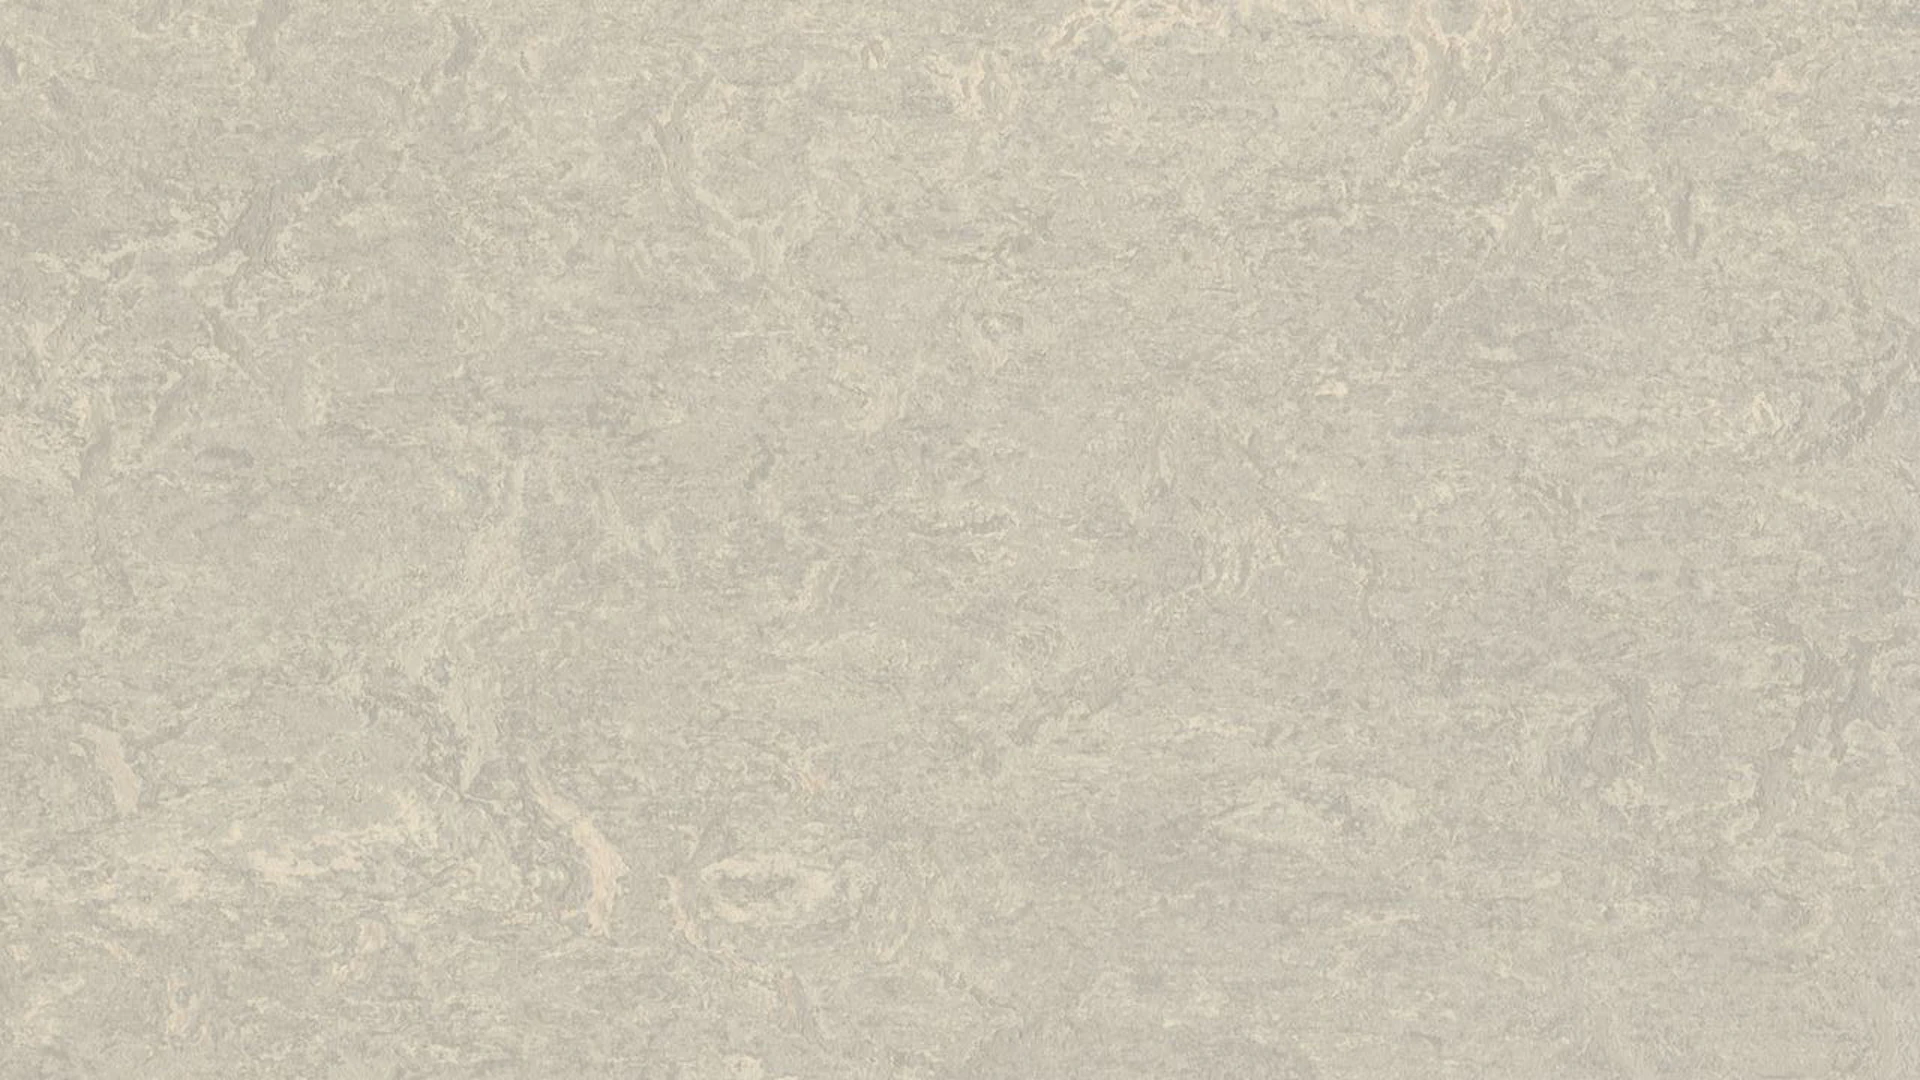 Forbo Linoleum Marmoleum - Cemento reale 3136 2.0